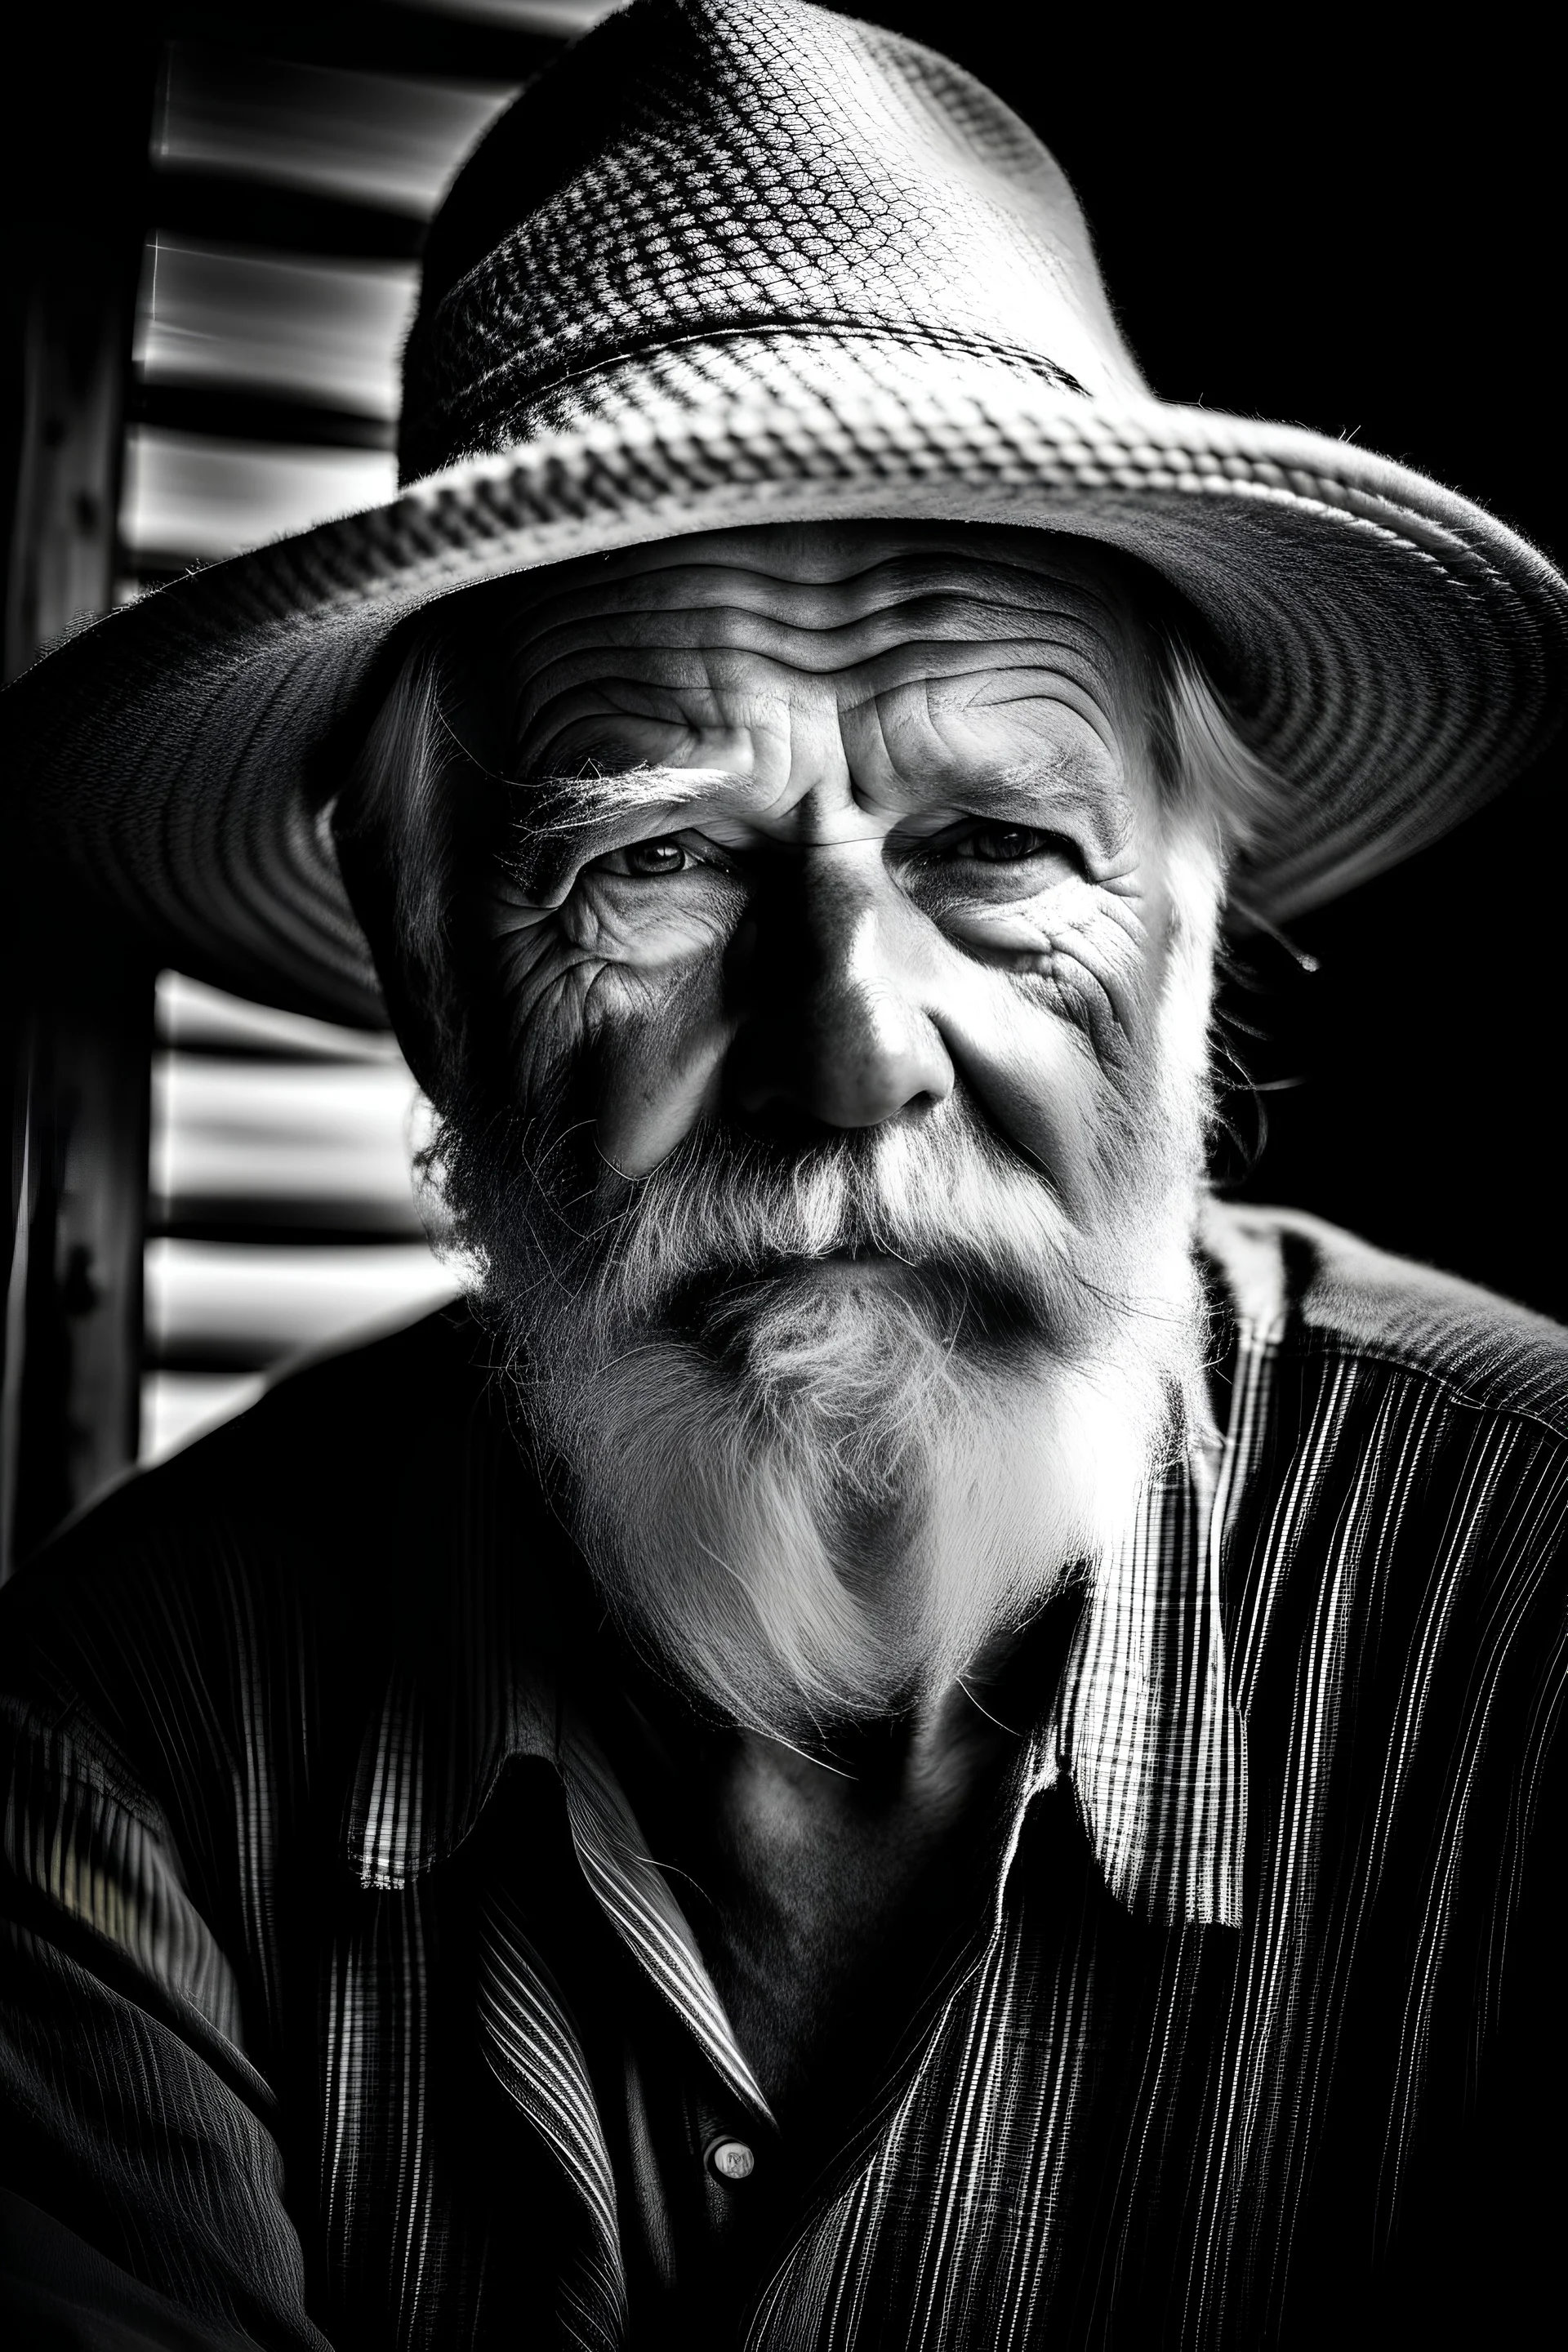 fotografía en blanco y negro de un pescador de 70 años, con barba y bigotes, sombrero de paja y una canasta, en un muelle de madera, gran plano general, alto contraste, luz intensa